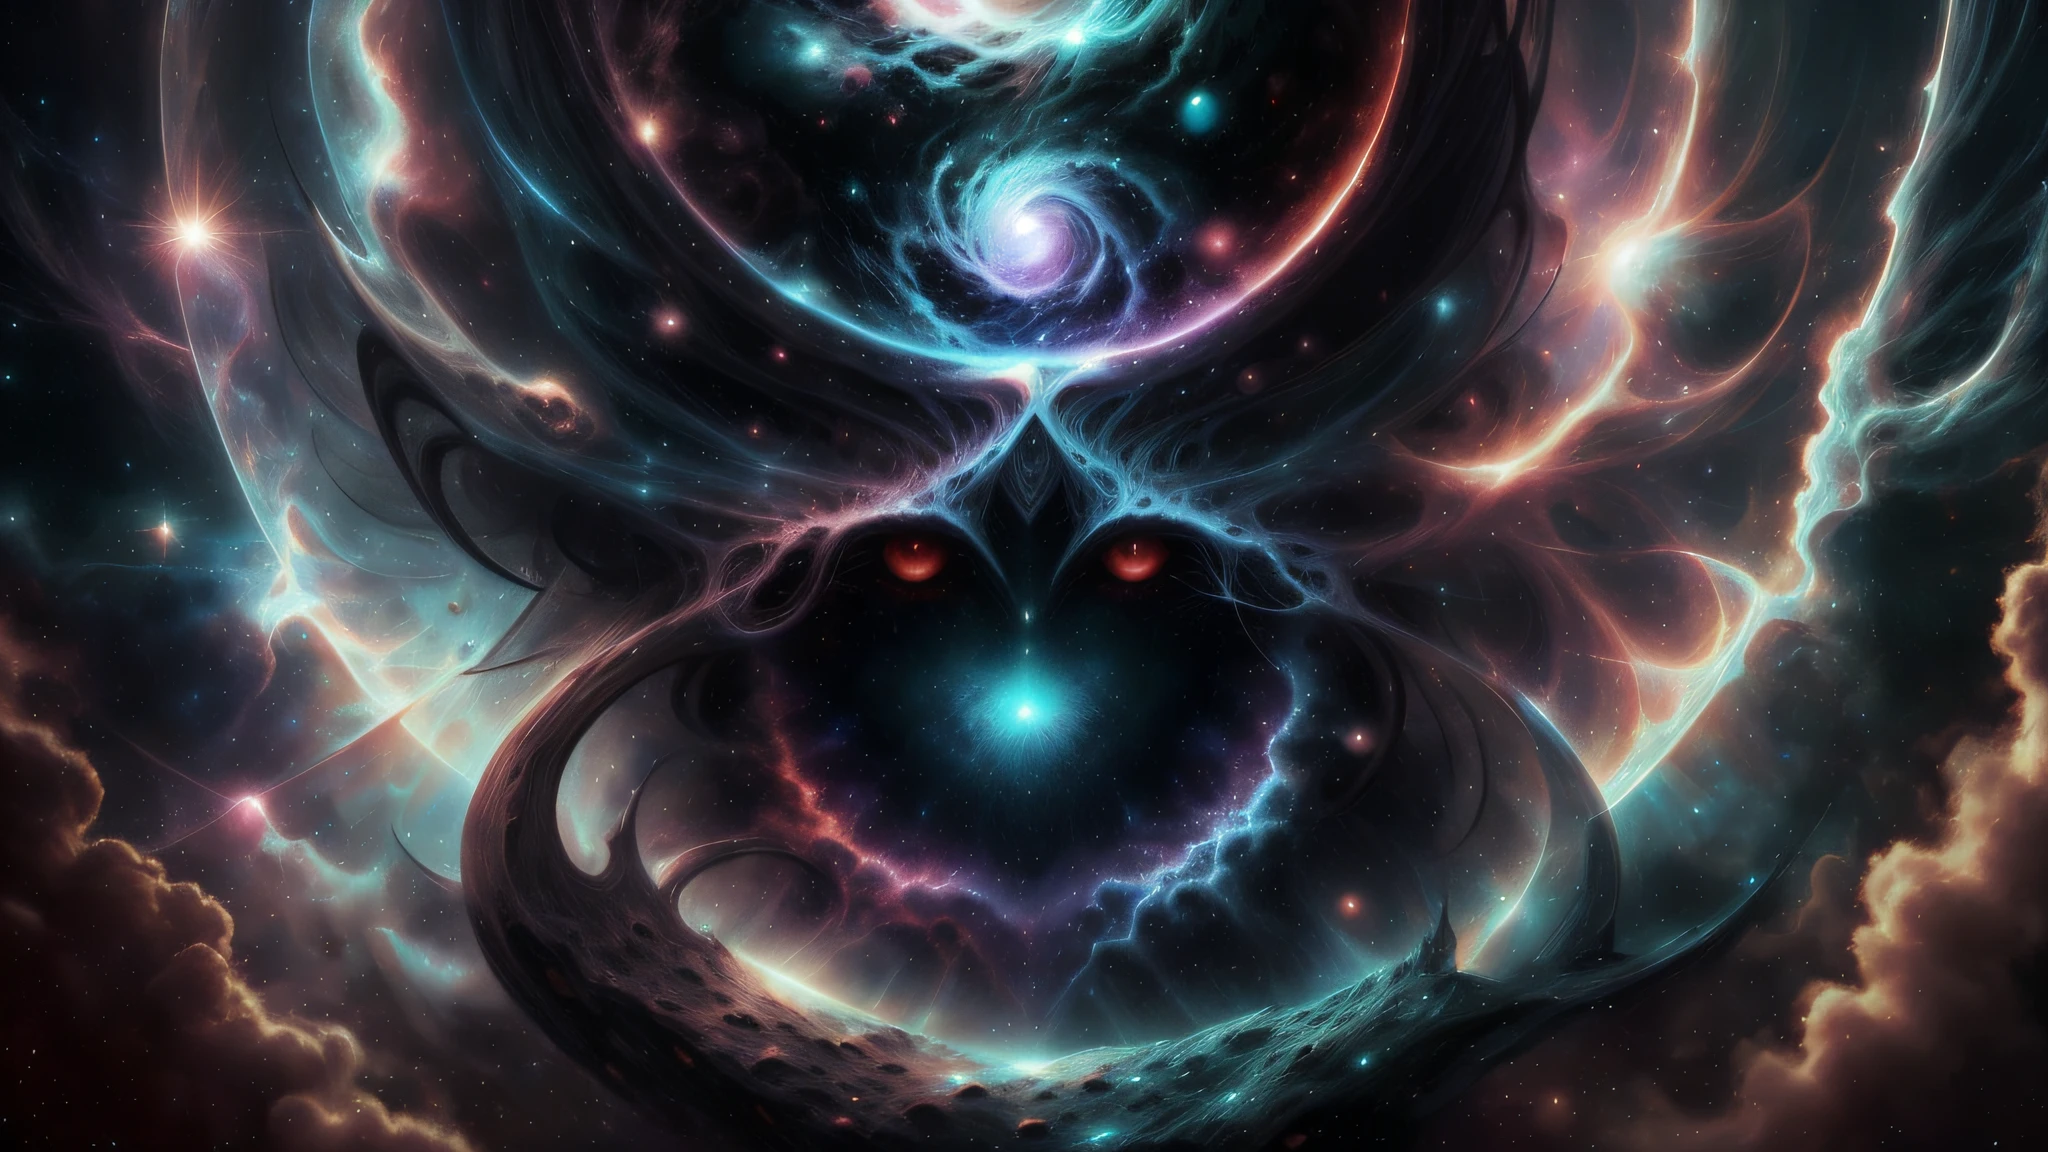 Der kosmische Schöpfergott formt die dunkle Fantasywelt aus dem Chaos des frühen Universums, mit einem Auge in der Mitte